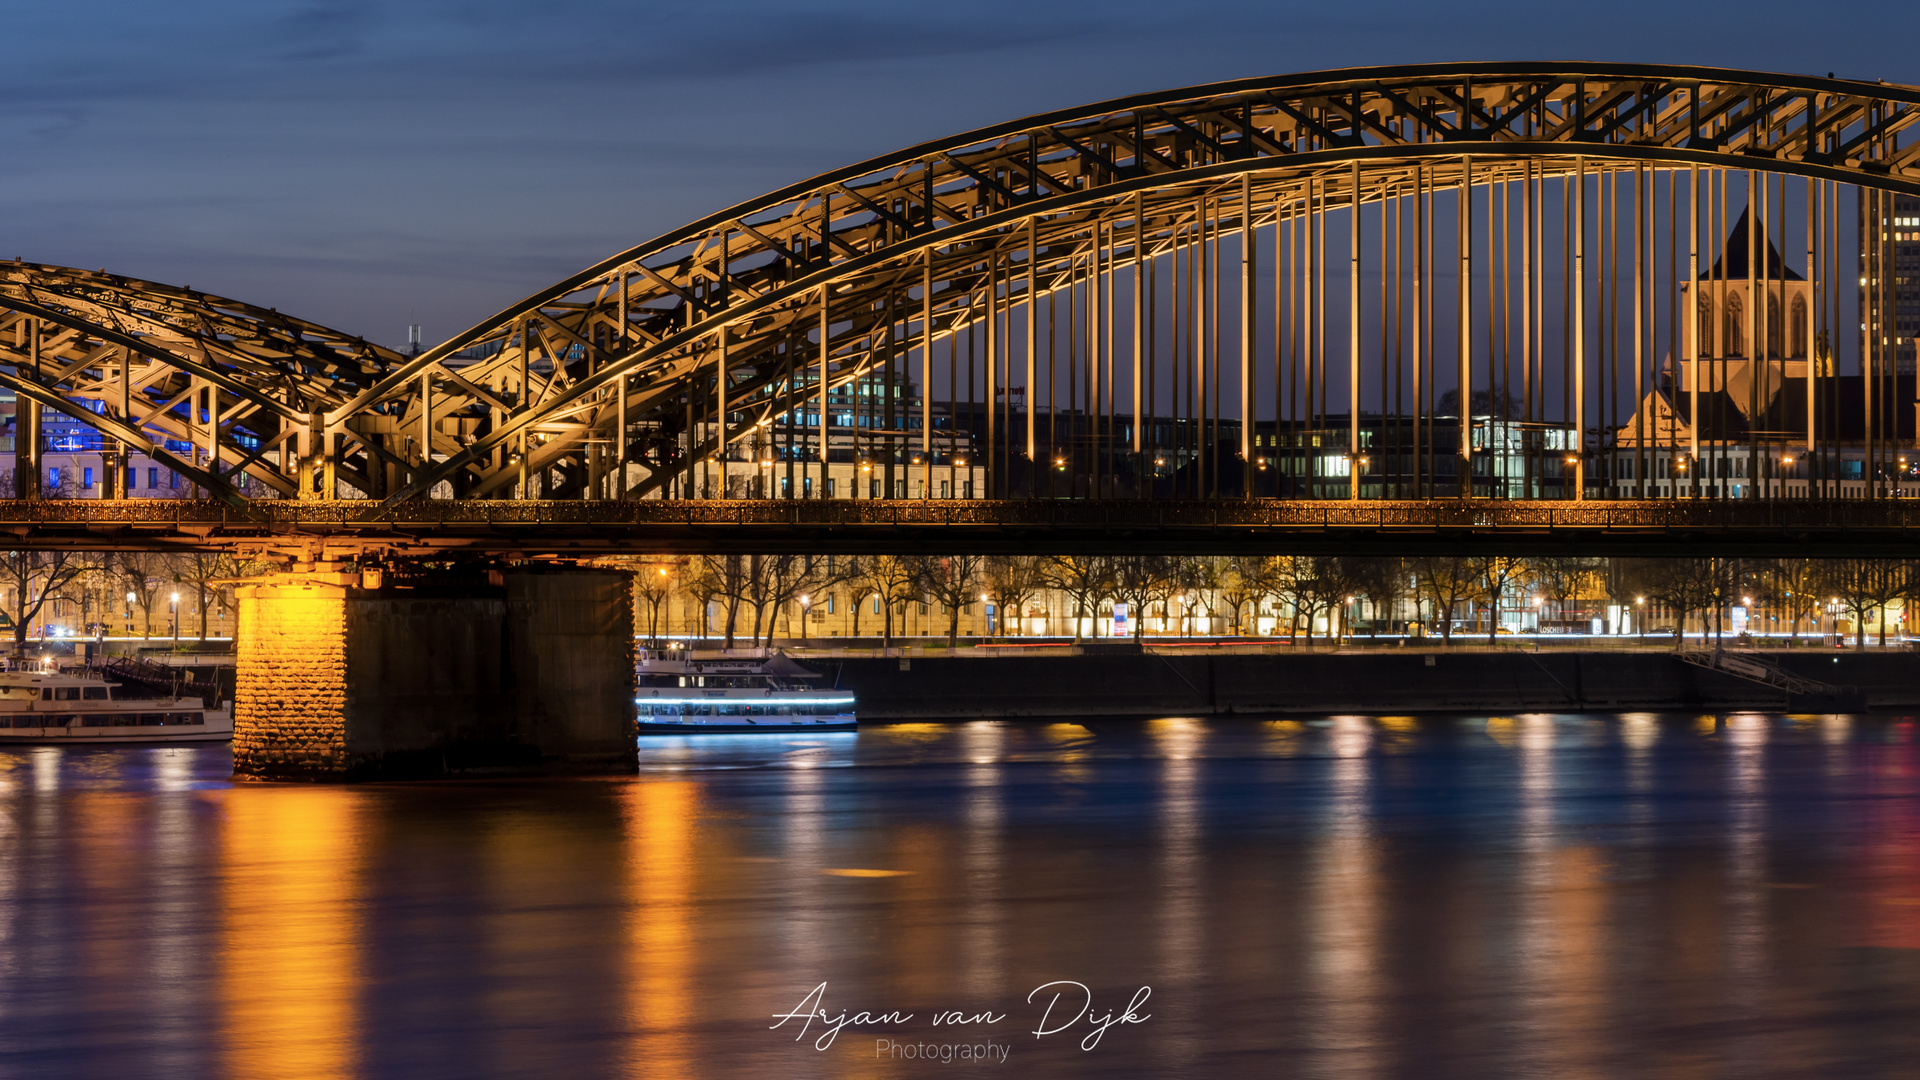 Die Hohenzollernbrücke